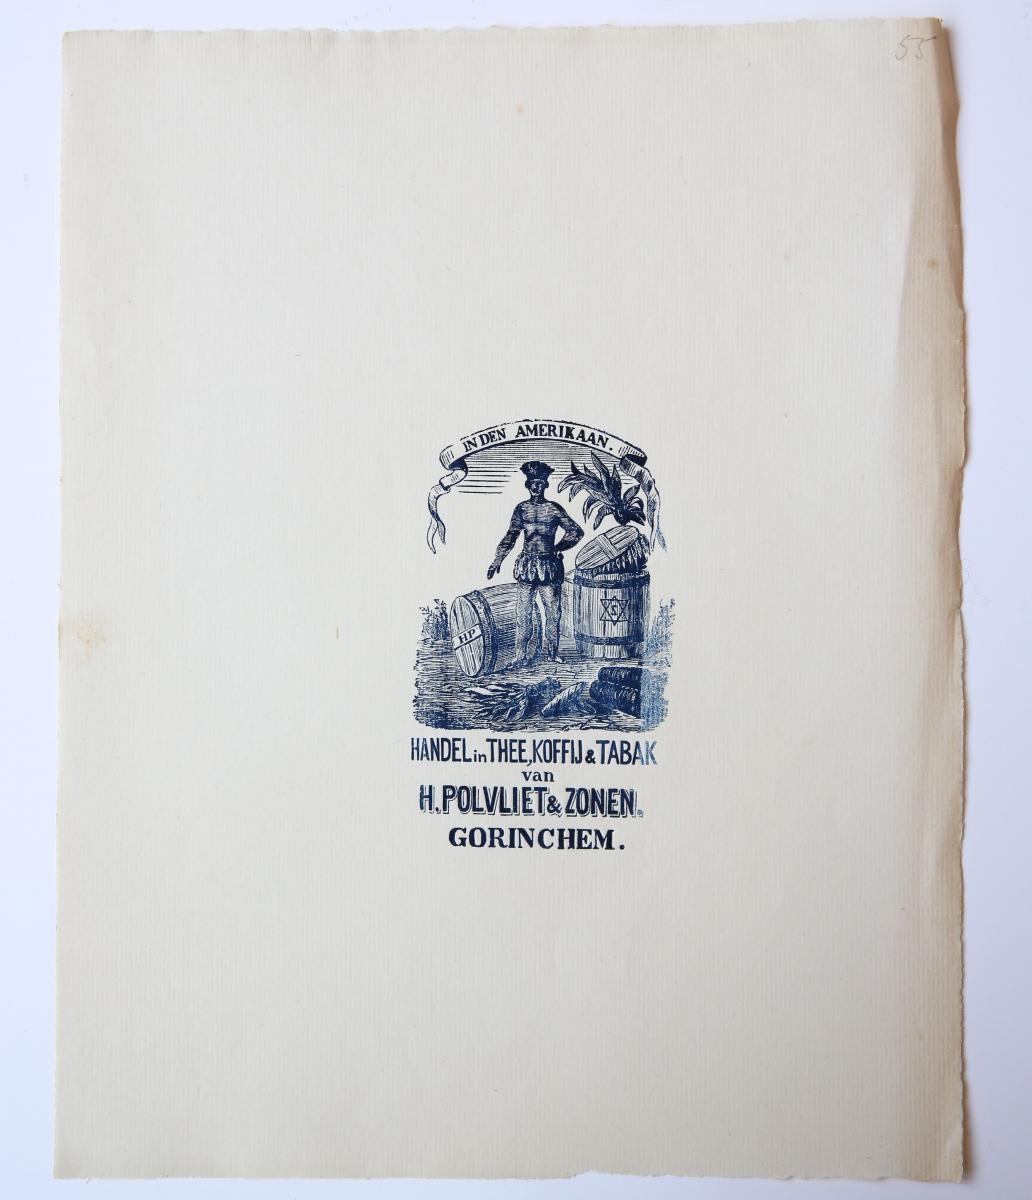  - POLVLIET, GORINCHEM Afdruk van een houtblok met het merk van `Handel in thee, koffij en tabak van H. Polvliet & Zonen, Gorinchem'. 19de-eeuws.